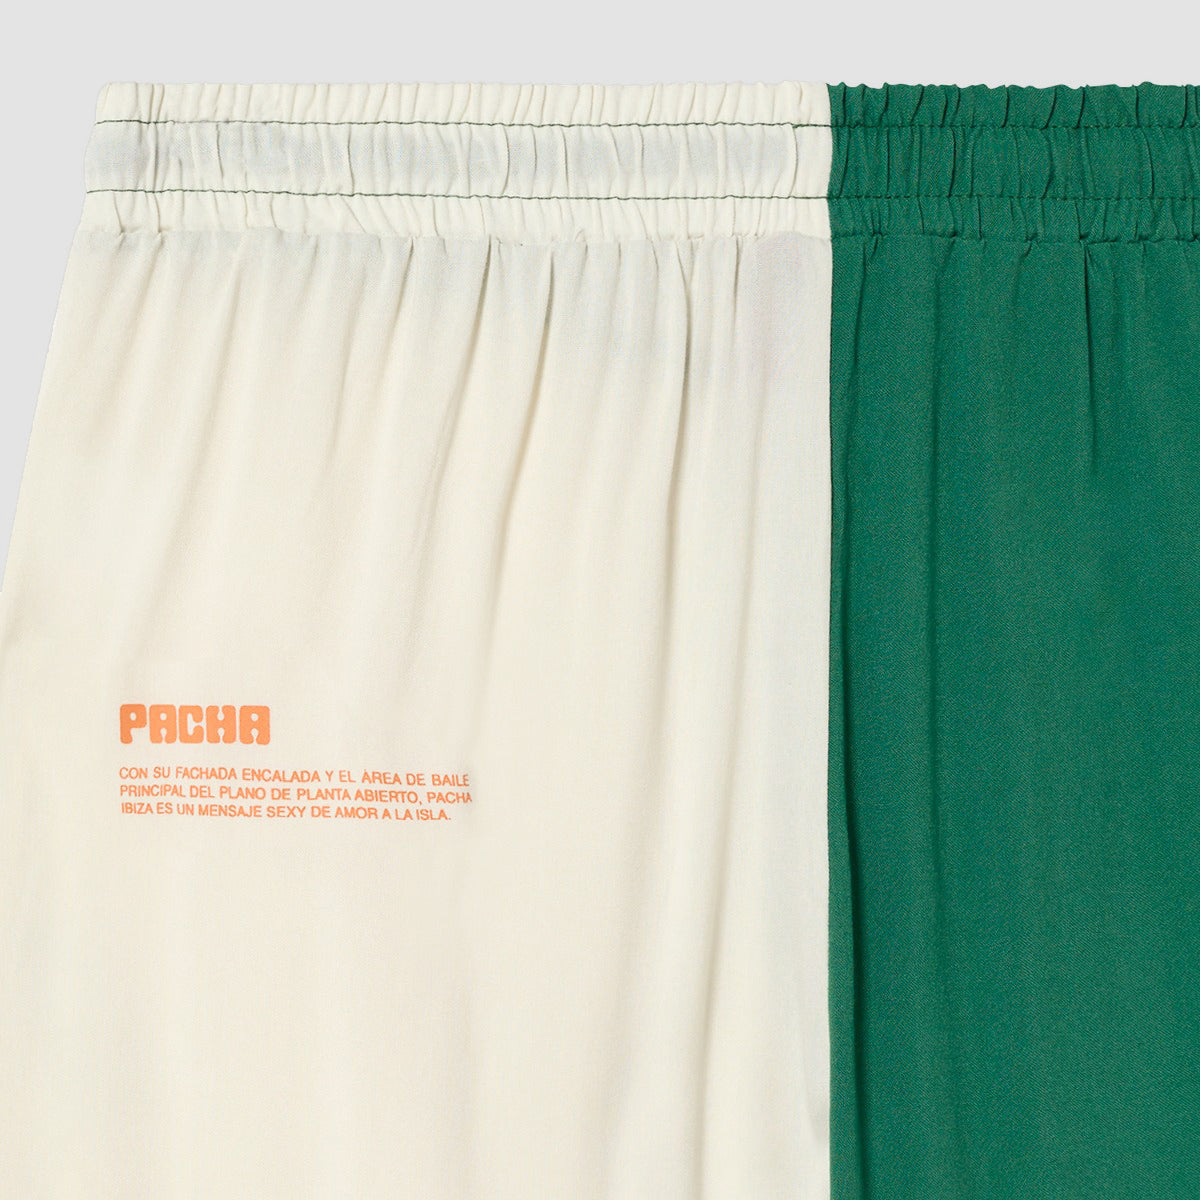 Pantaloni verdi e bianchi 1973